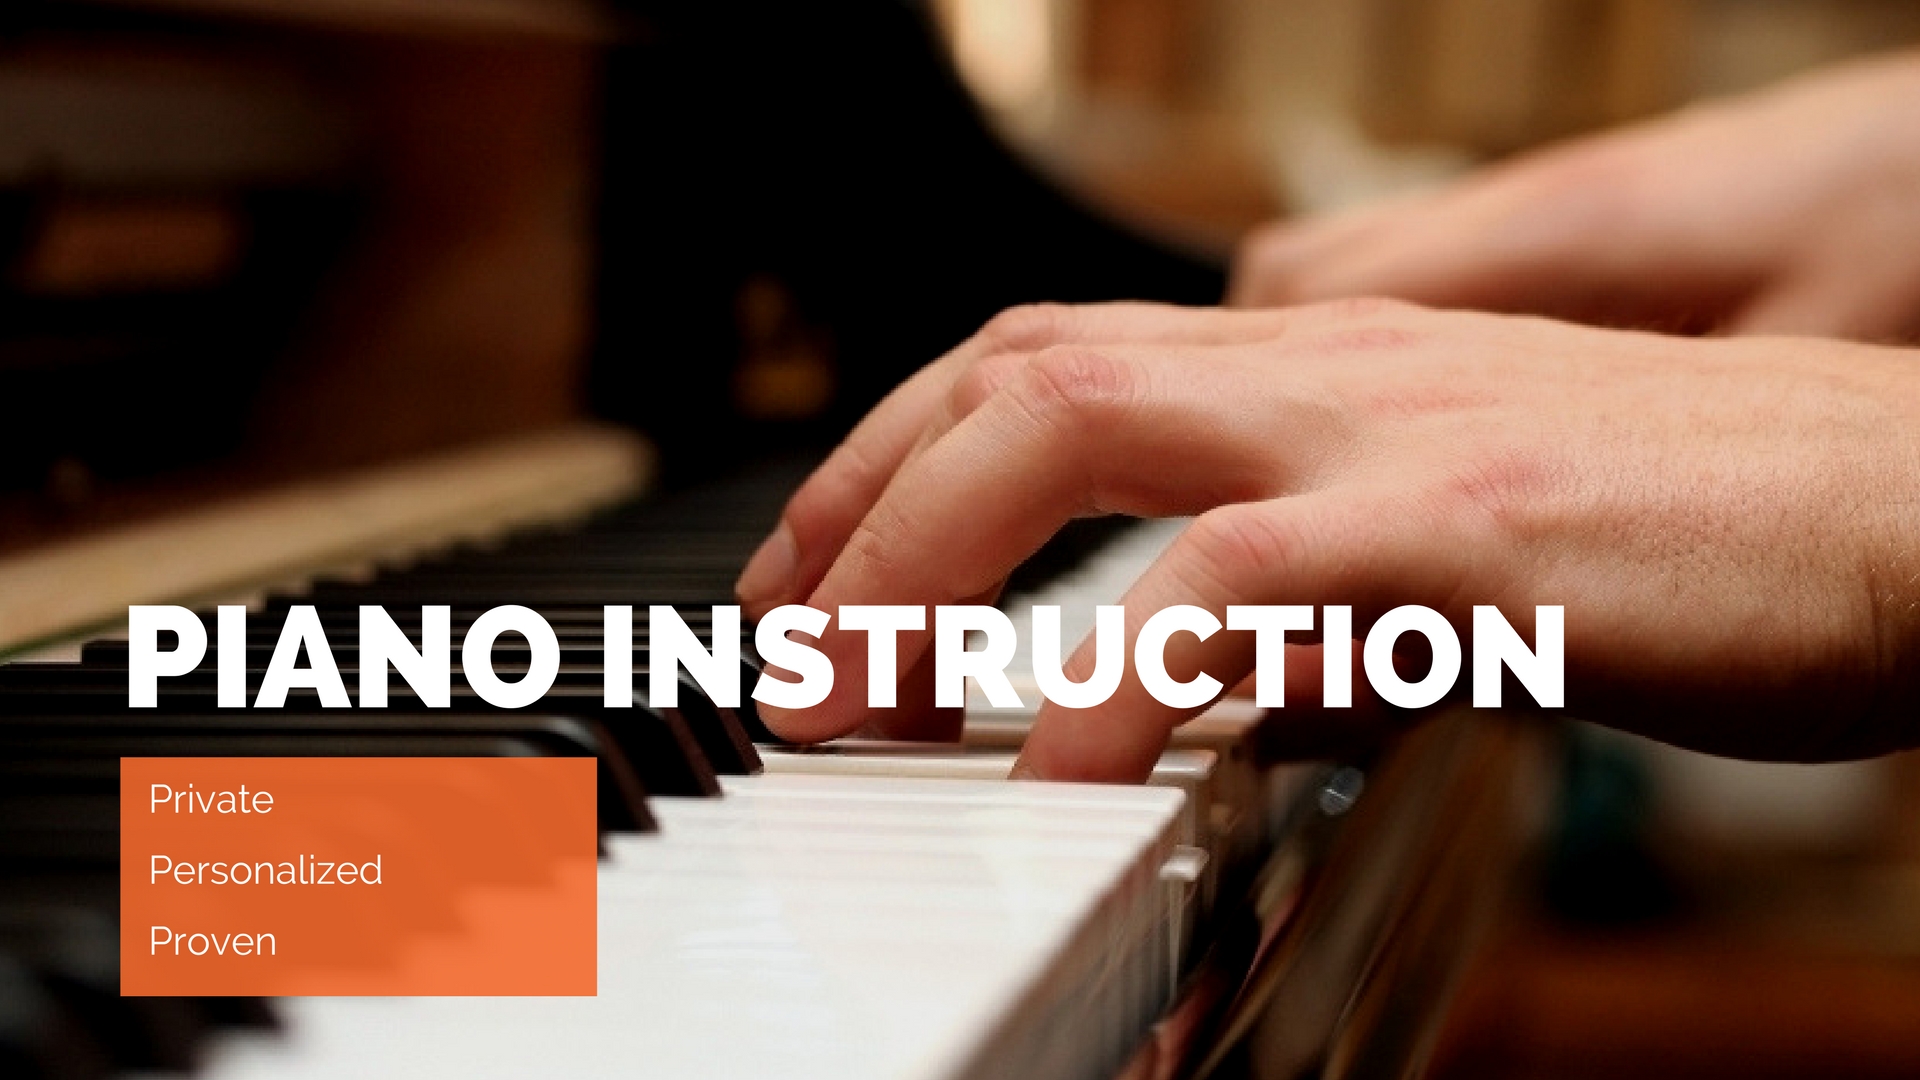 Copy of piano instruction (4).jpg